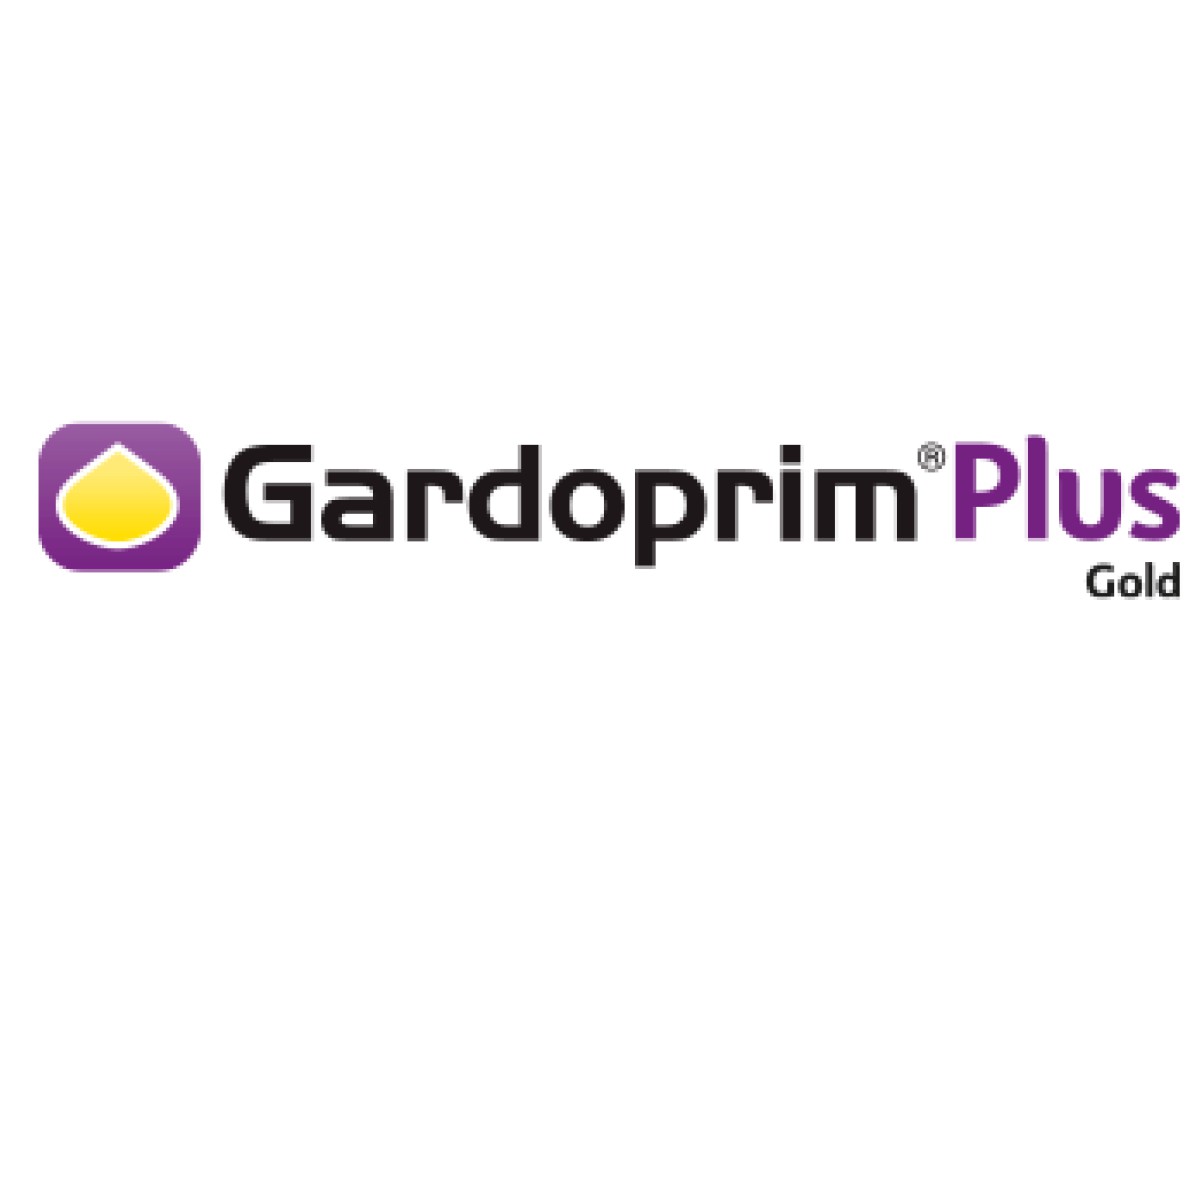 Gardoprim Plus Gold